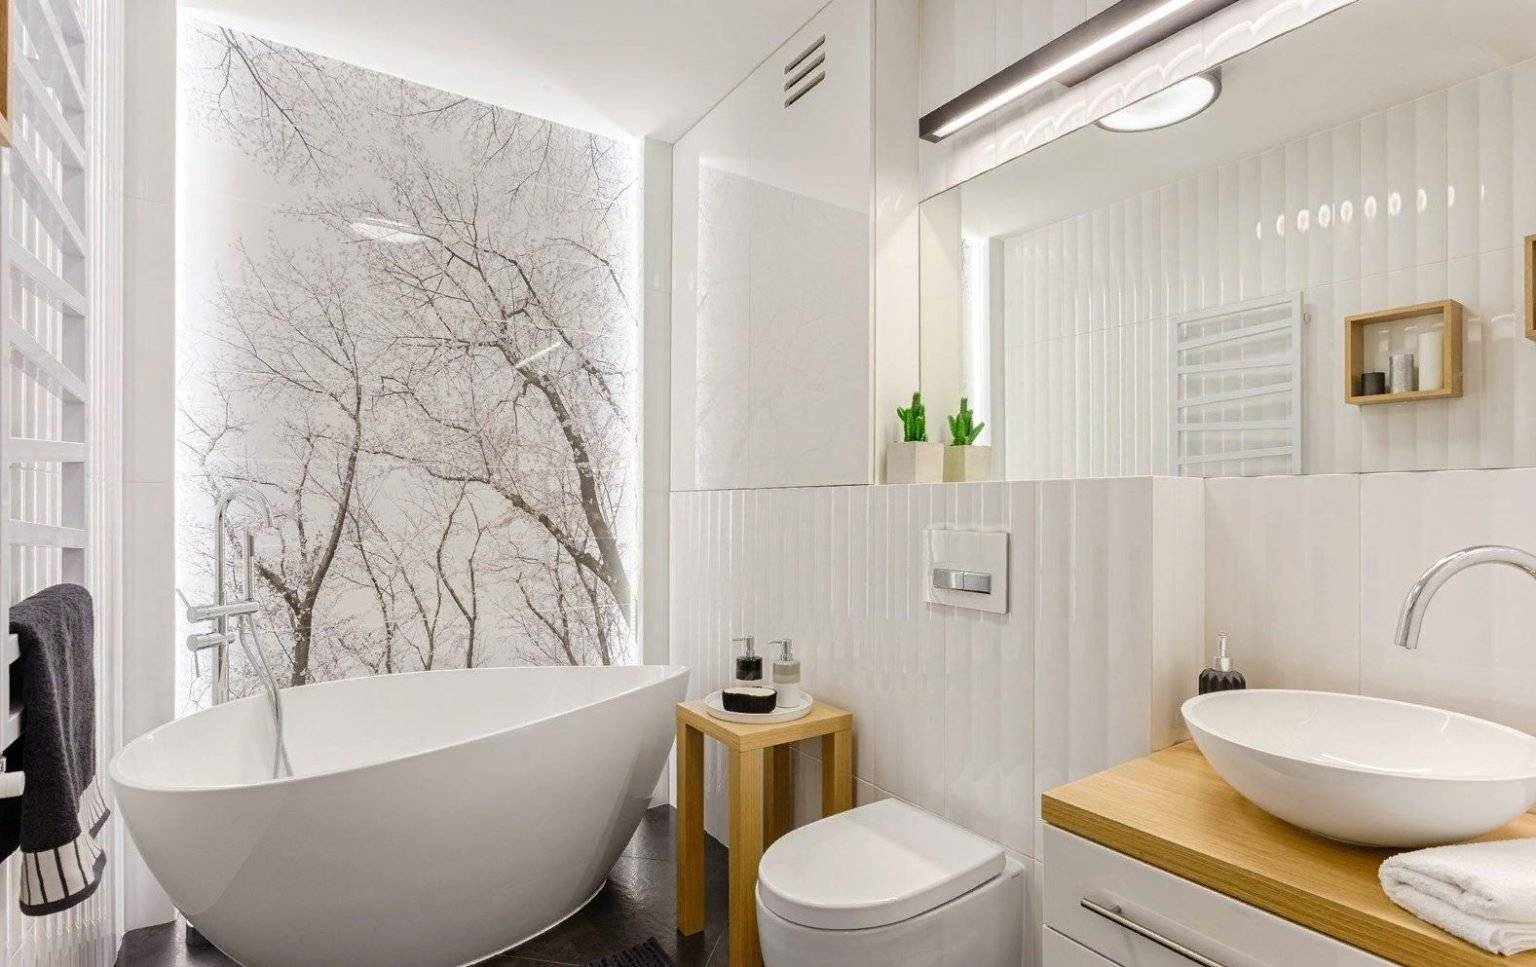 Ванная комната в скандинавском стиле, полезные советы и идеи для усовершенствования ванной вашей мечты.